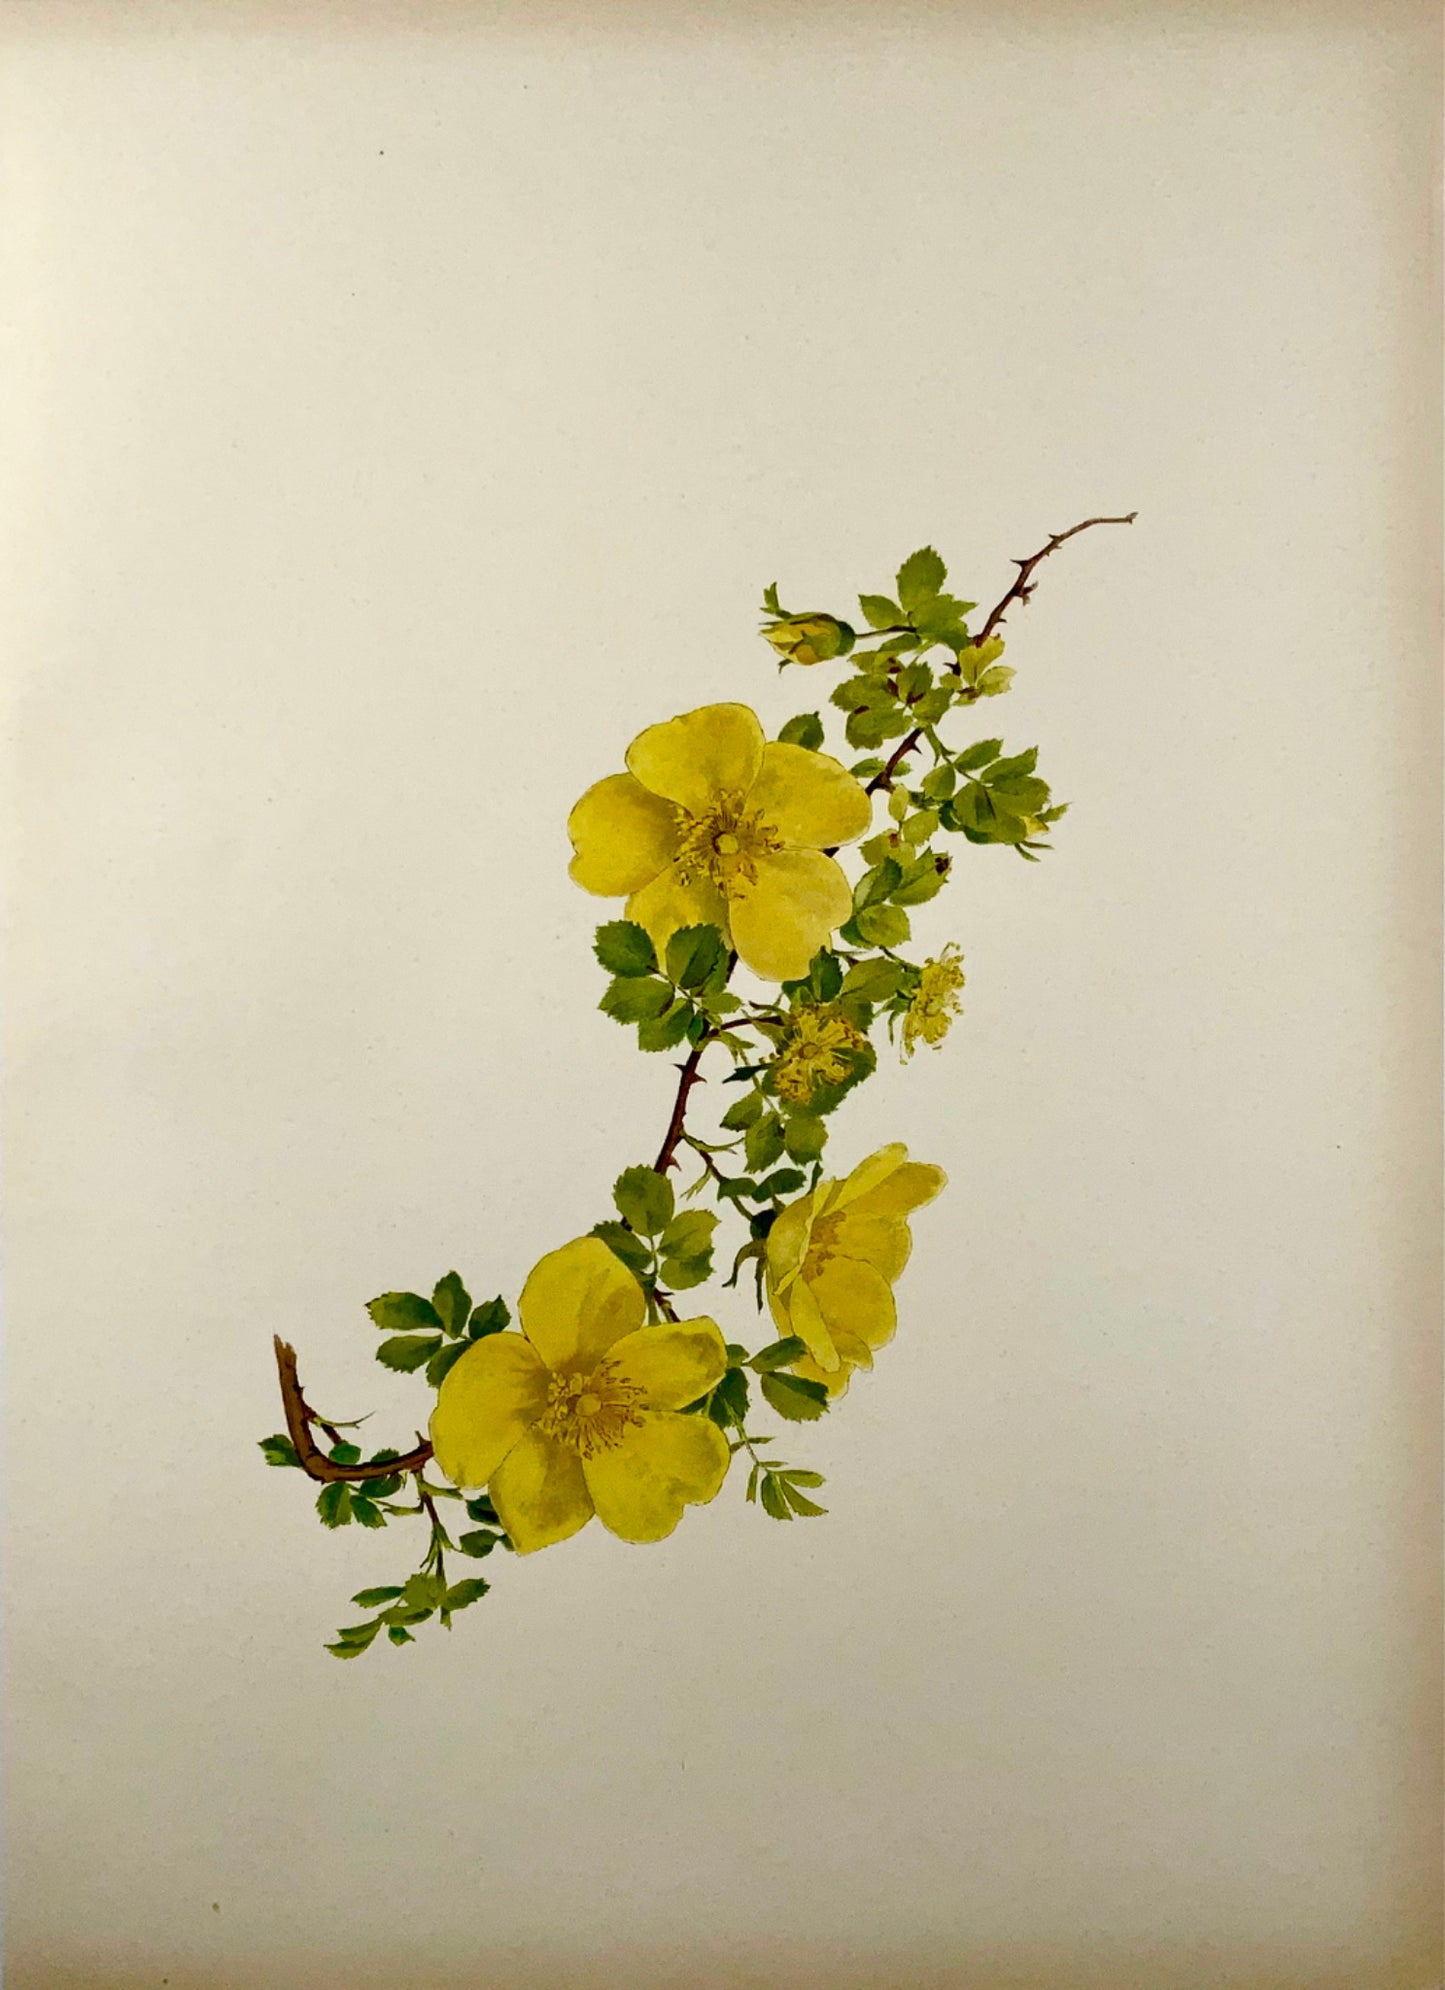 1914 Rosa gialla, foetida, foglio grande 37 cm, Willmott, EA (nato nel 1858), botanica